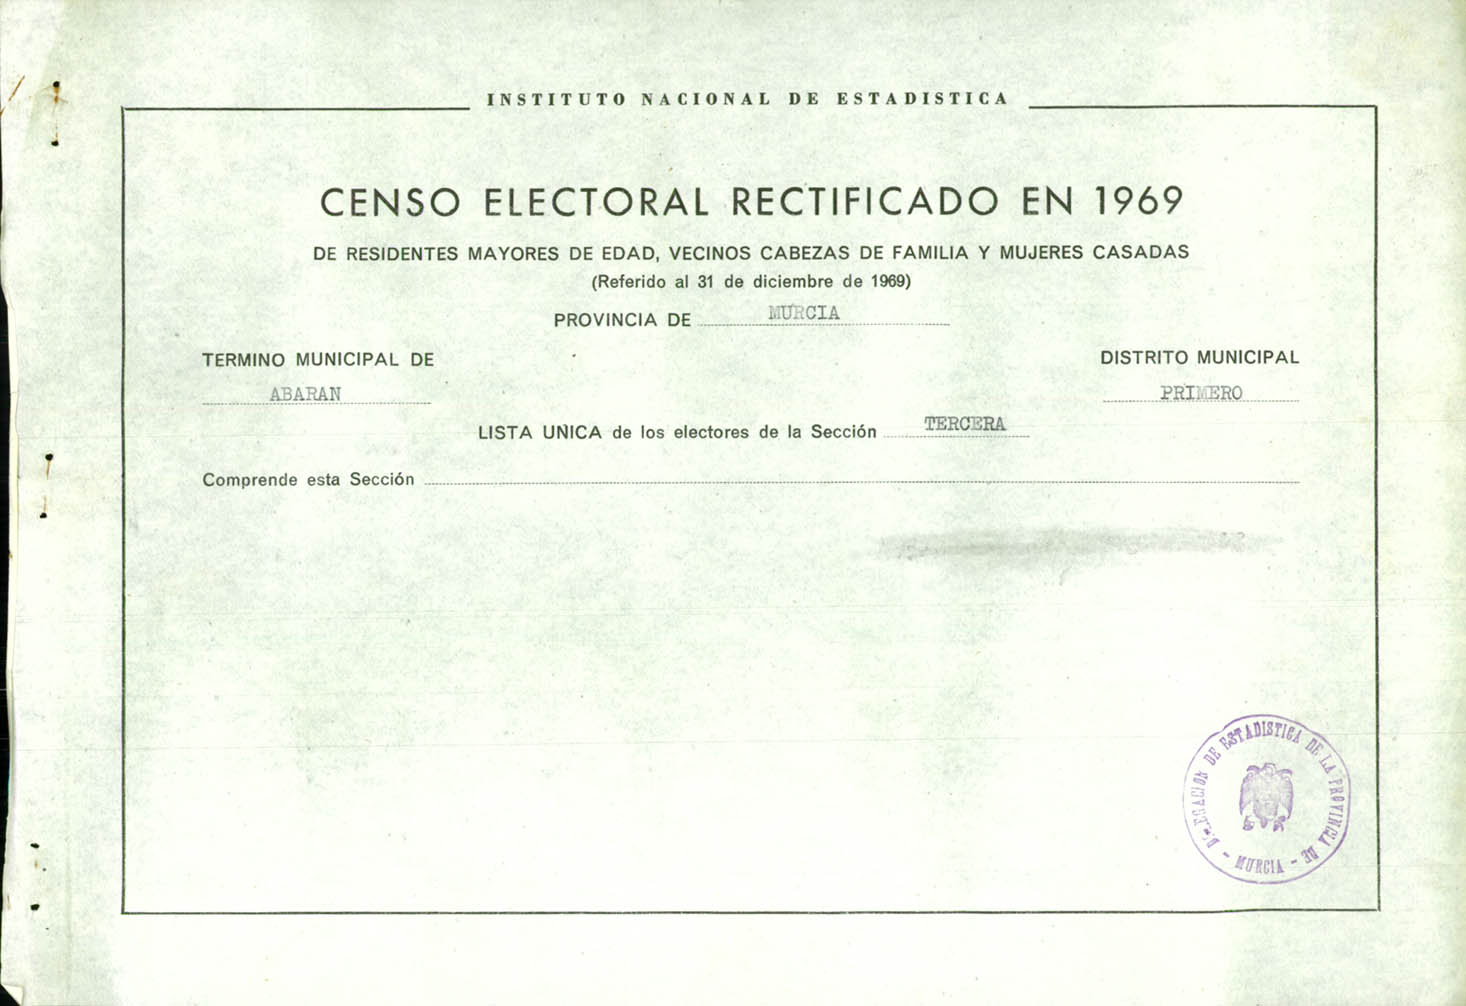 Censo electoral rectificado en 1969: listas definitivas de Abarán, Distrito 1º, sección 3º.